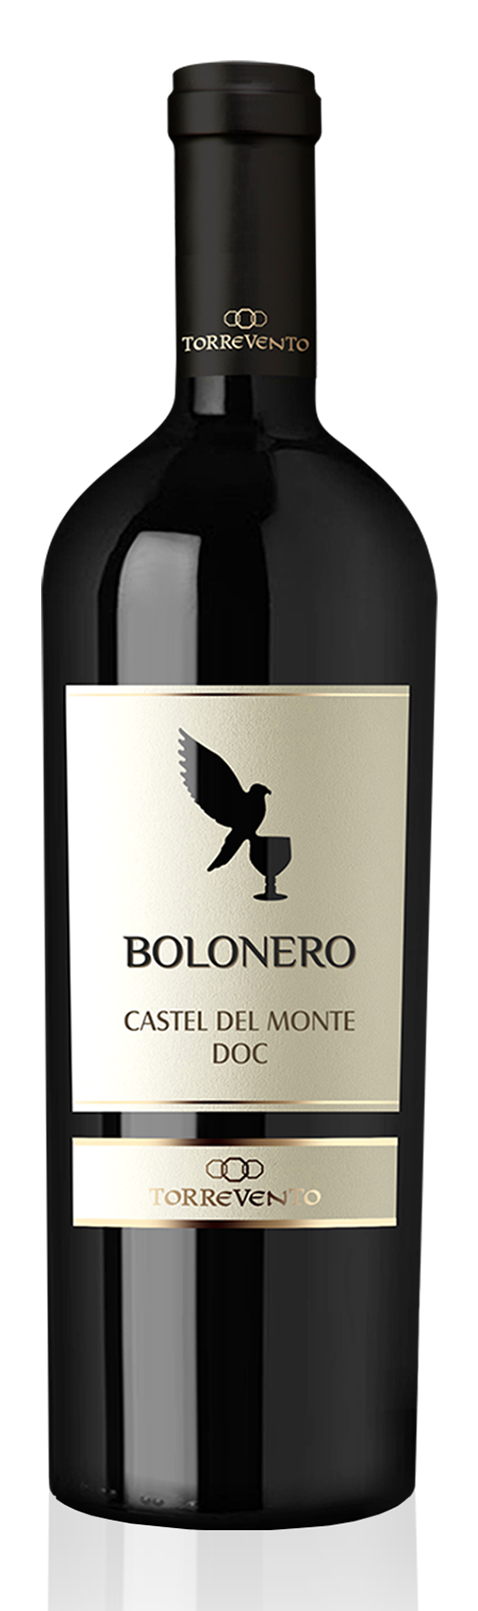 Bolonero Castel del Monte DOC 2018 Torrevento